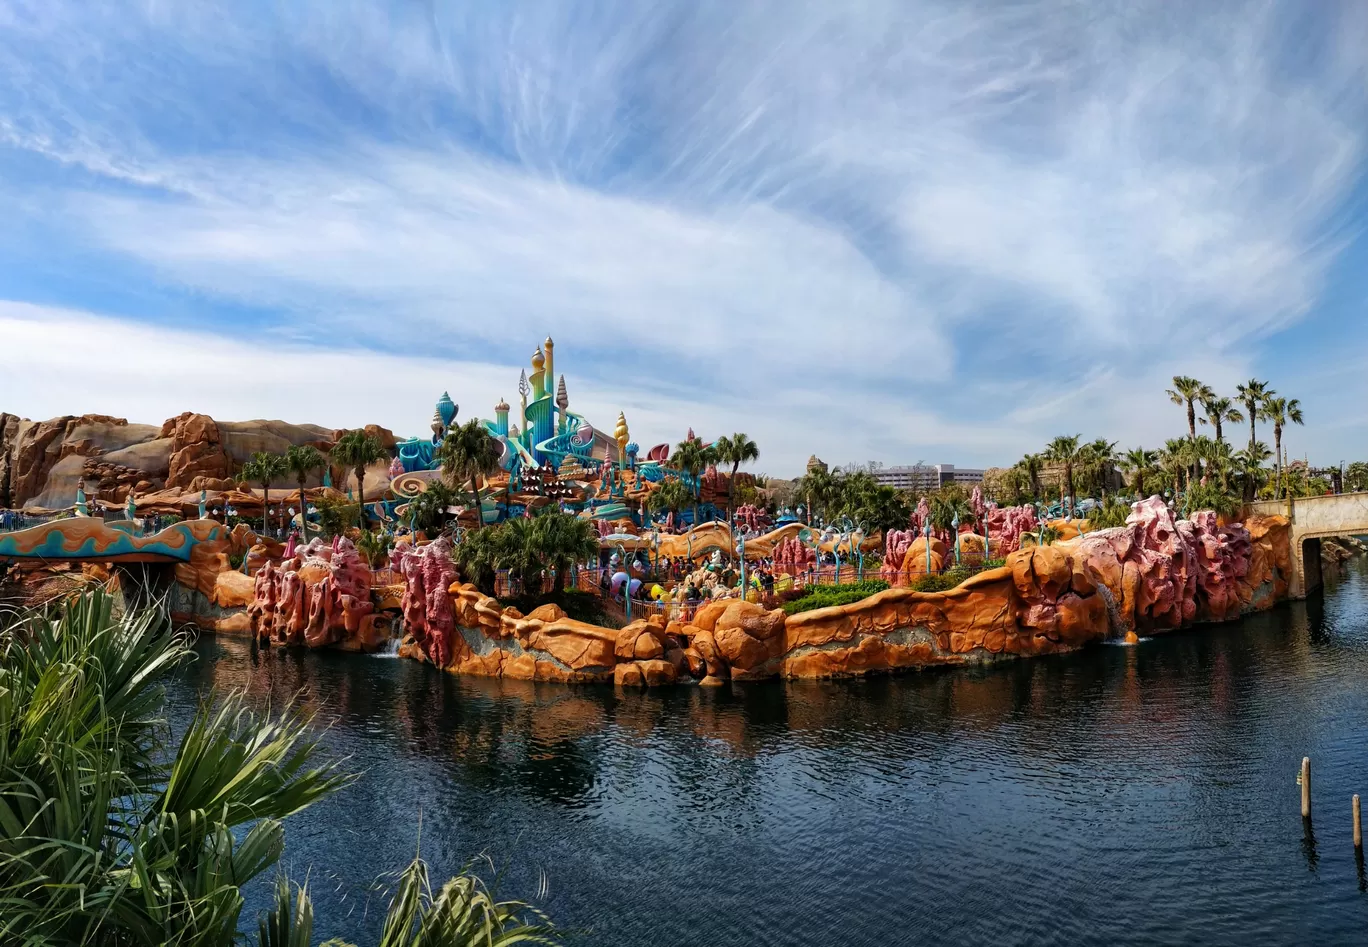 Photo of Disneyland Tokyo By Pooja Khandelwal